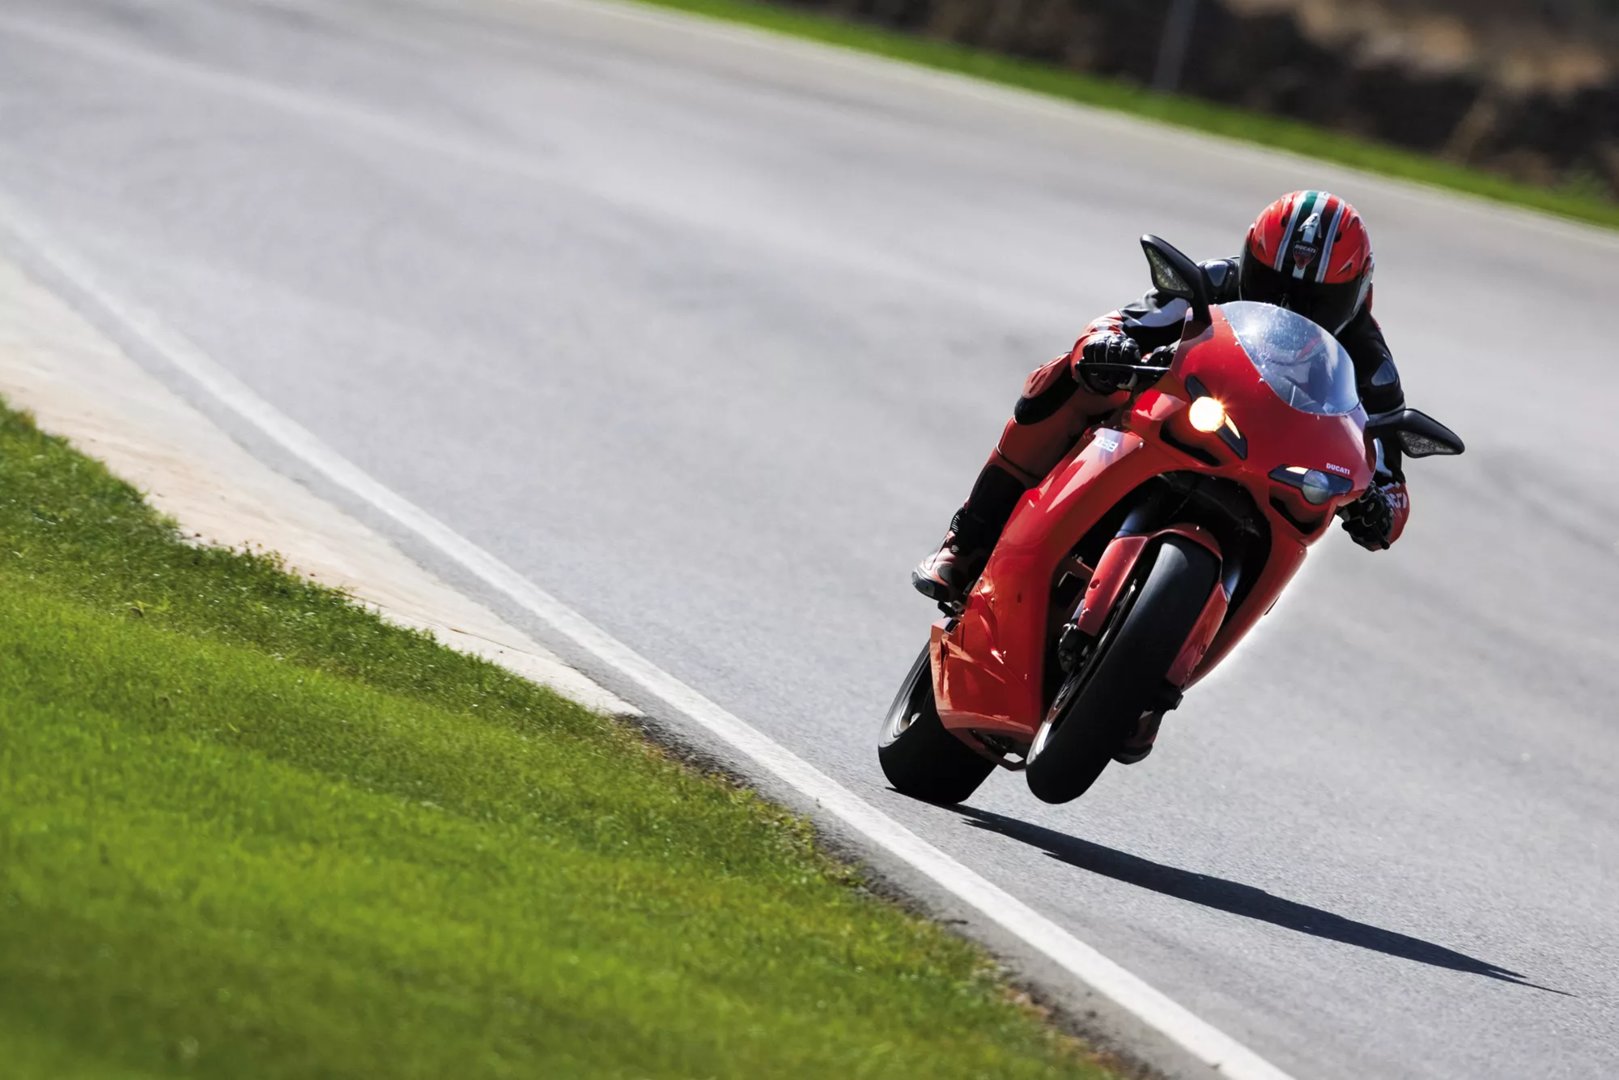 Moto del día: Ducati 1098